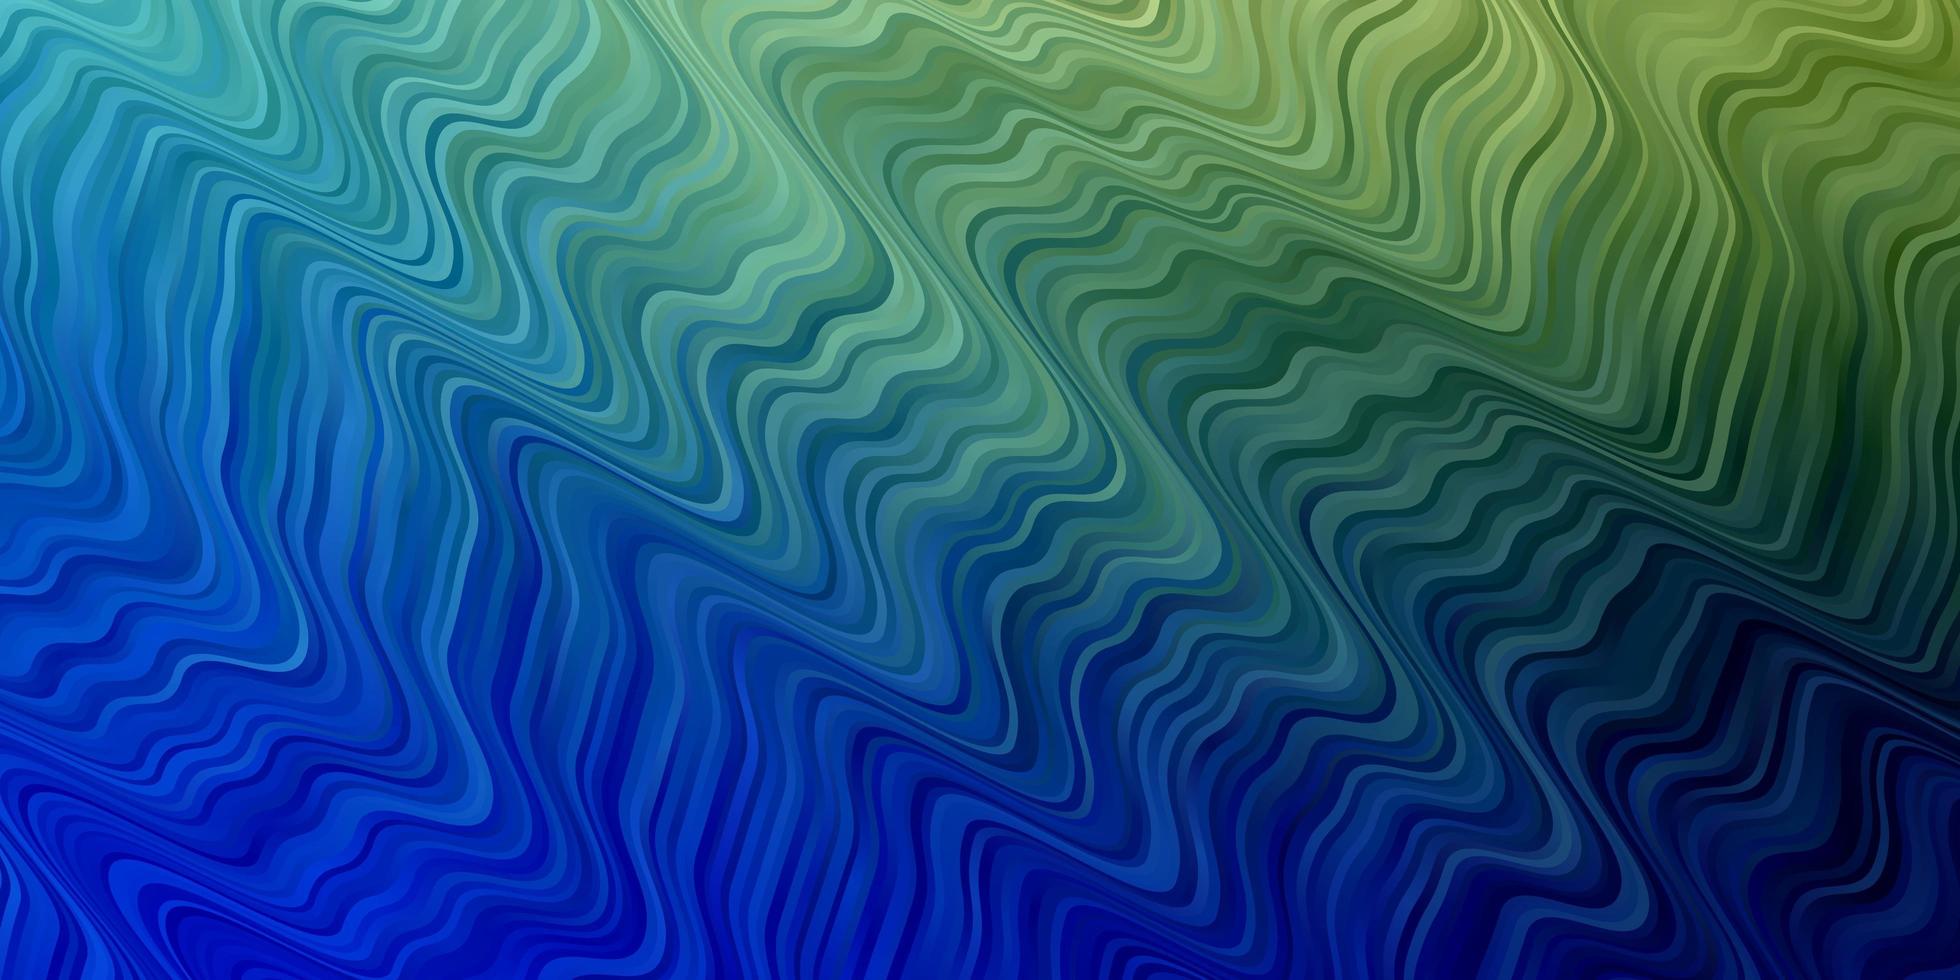 modello vettoriale azzurro, verde con linee. illustrazione in stile astratto con gradiente curvo. modello per cellulari.